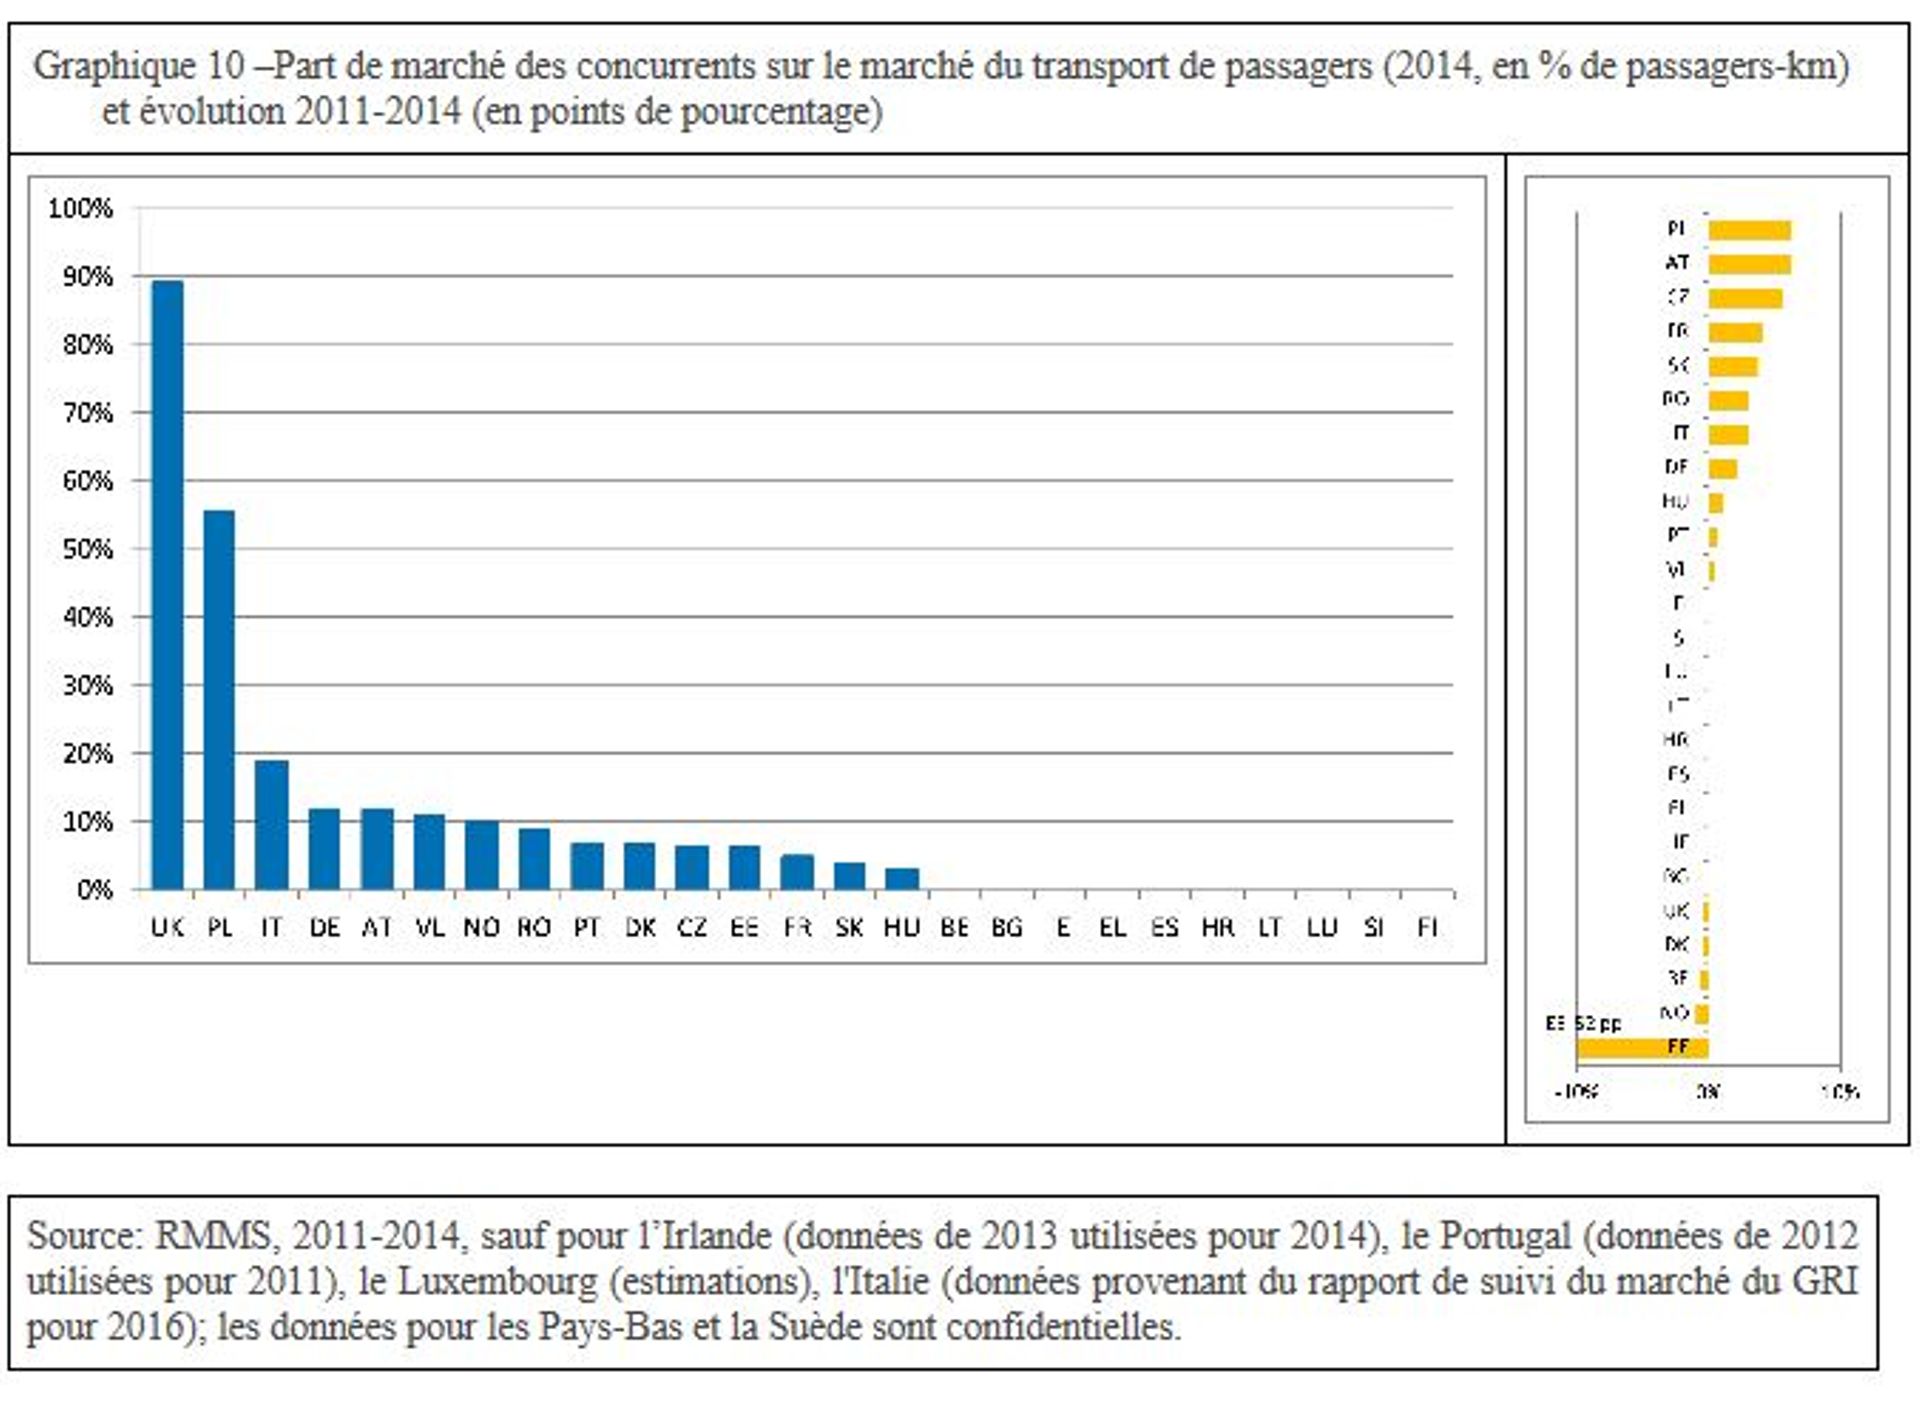 Graphique des parts de marché des concurrents sur le marché du transport de passagers (2014, en % de passagers-k) et évolution 2011-2014 (en points de pourcentage)  